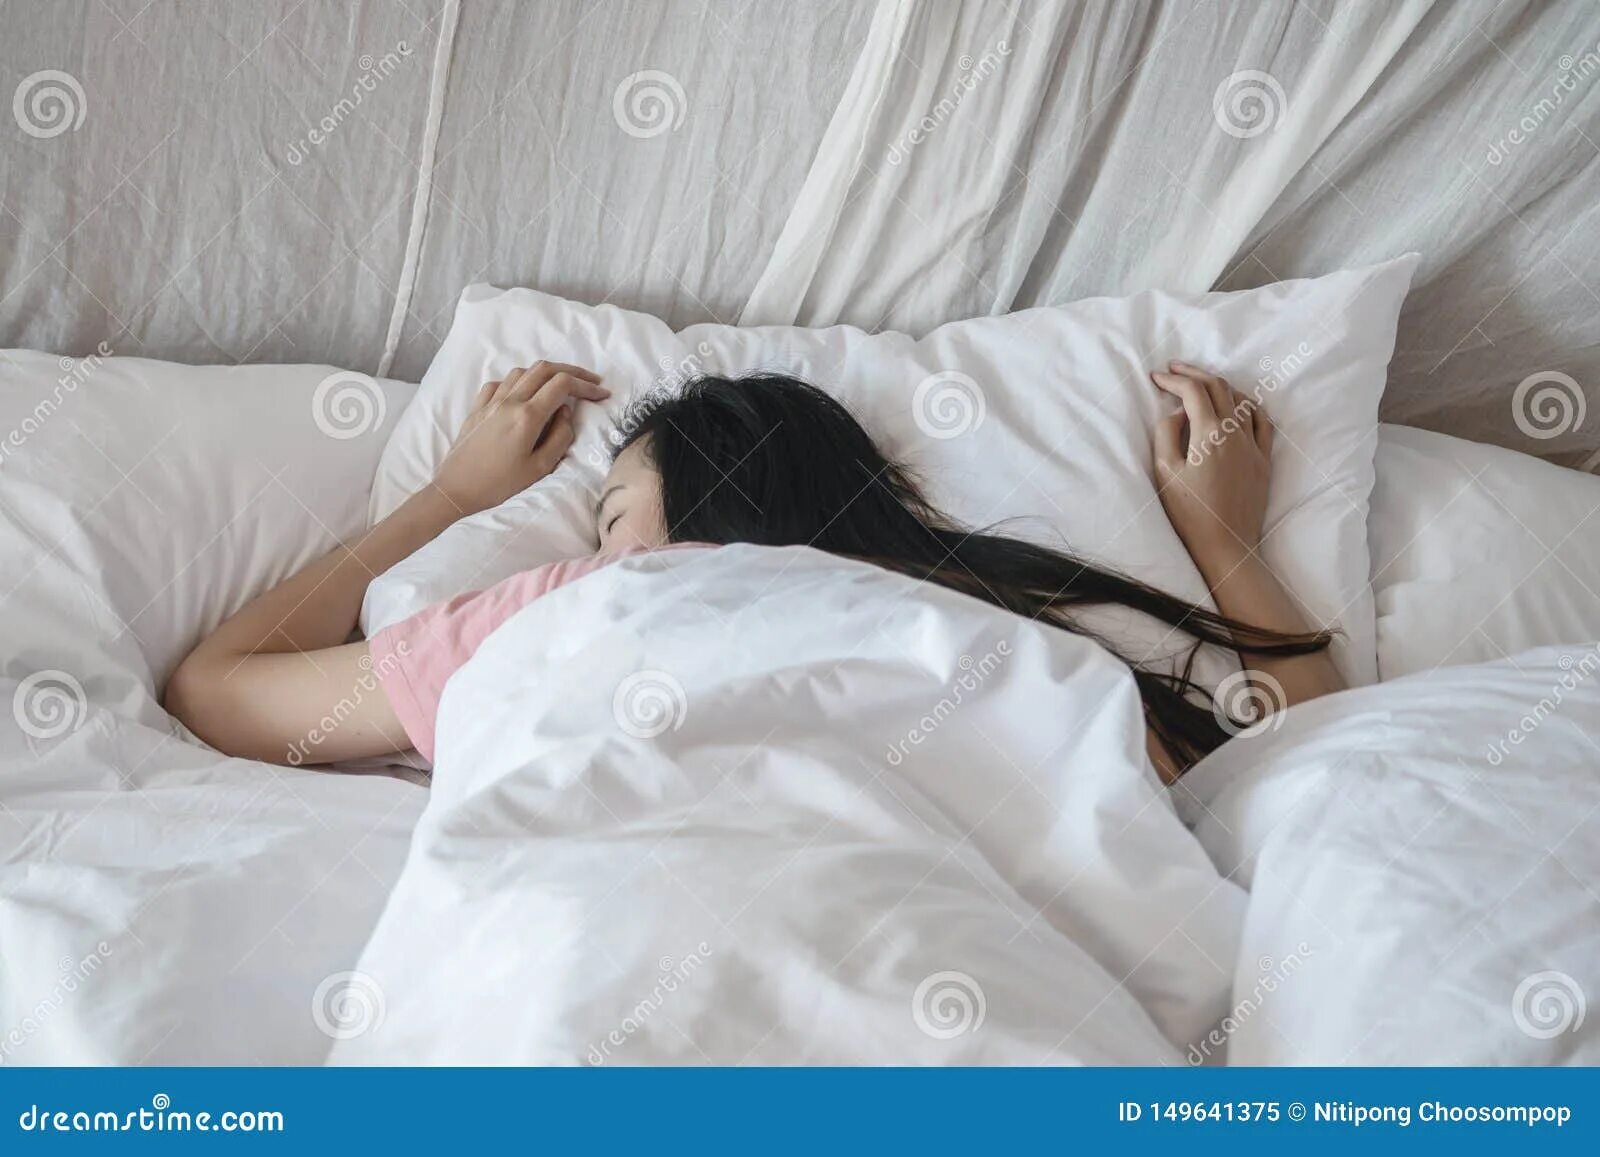 Брюнетка в спальне. Брюнетка на кровати под одеялом. Брюнетка в кровати в одеяле.